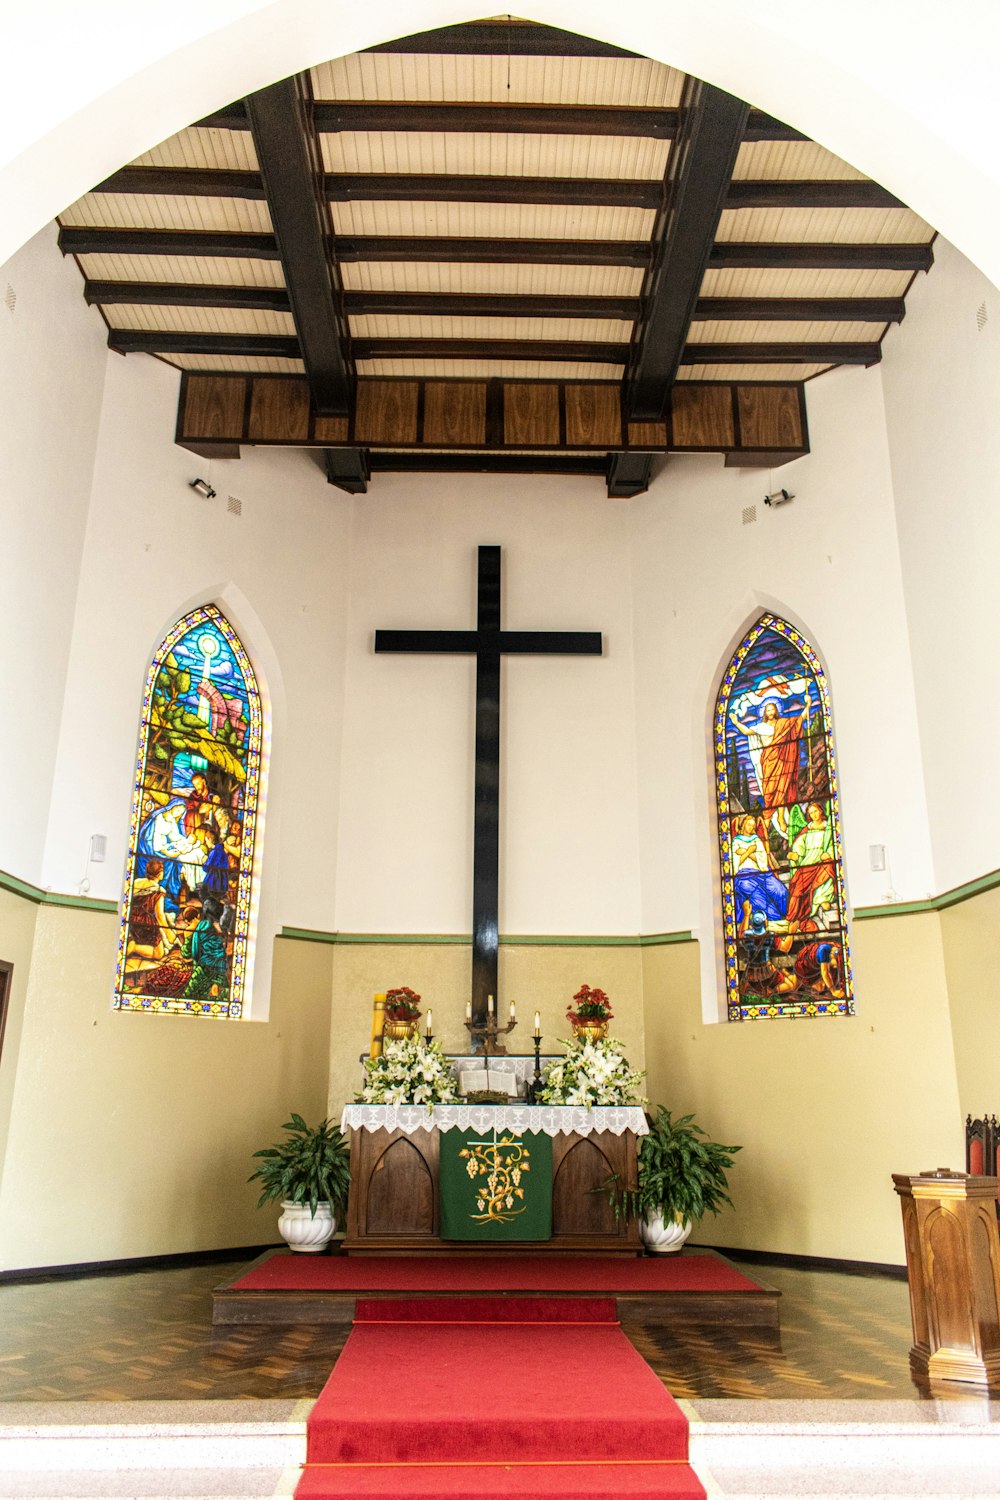 black wooden cross inside white church